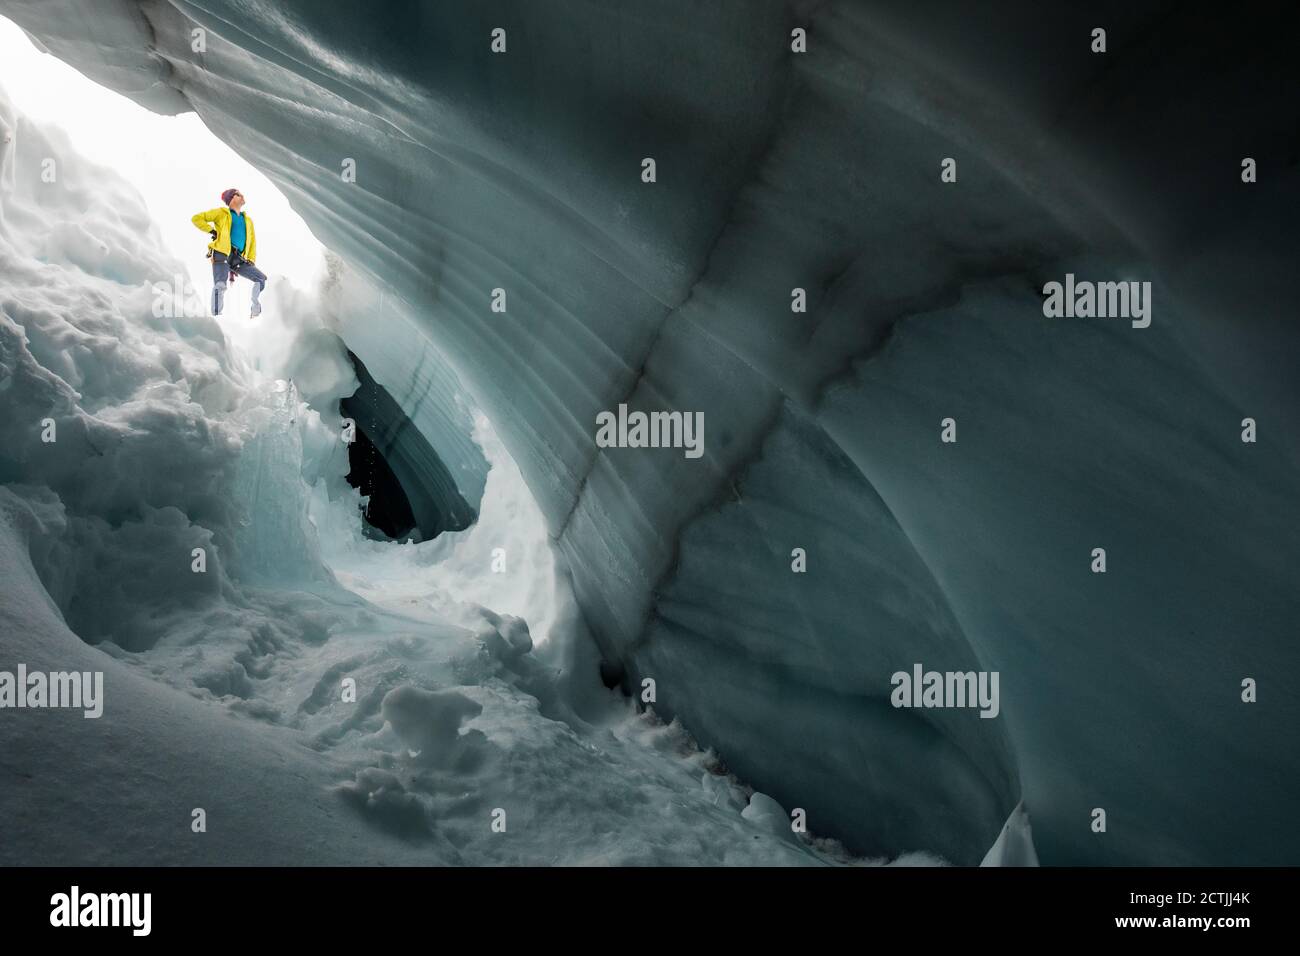 Alpiniste, Paul McSorley, vu à travers la crevasse glaciaire. Banque D'Images